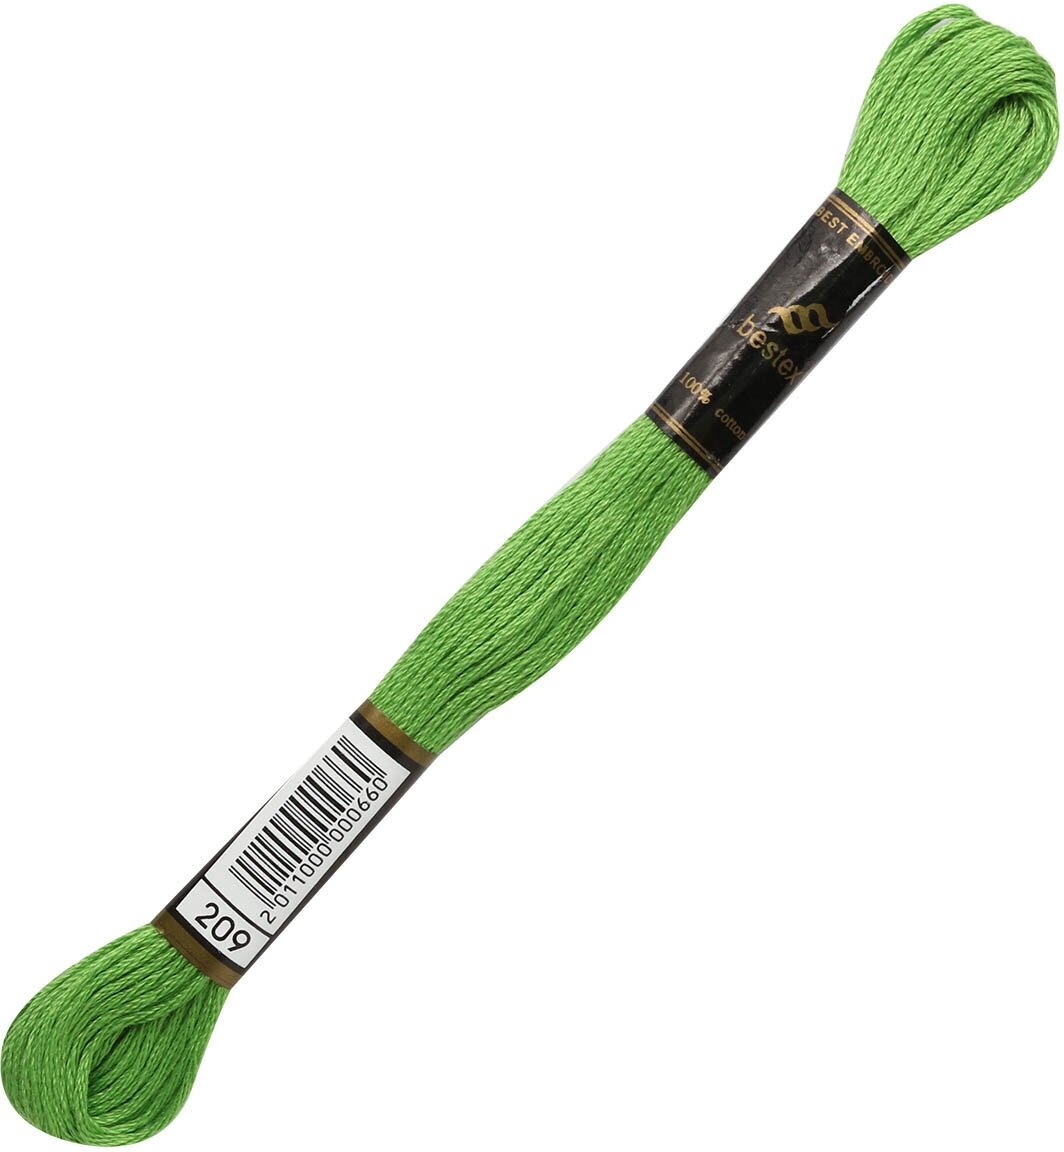 Мулине BESTEX нитки для вышивания 8 м, цвет 209, 1 штука.